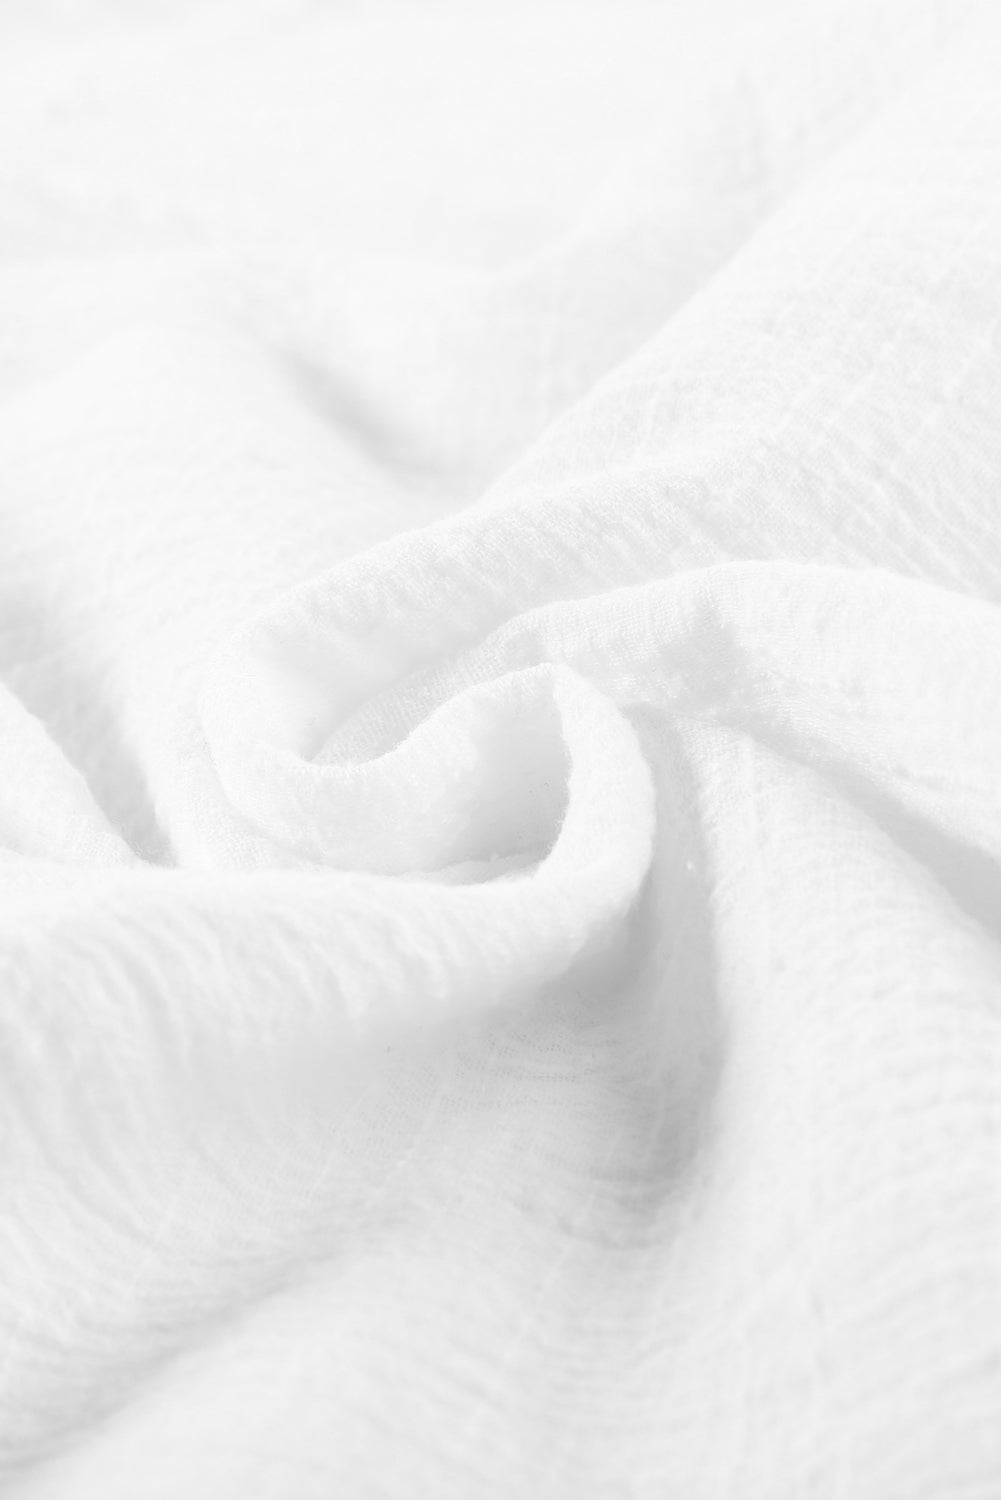 Enobarvna osnovna bela srajca s teksturo